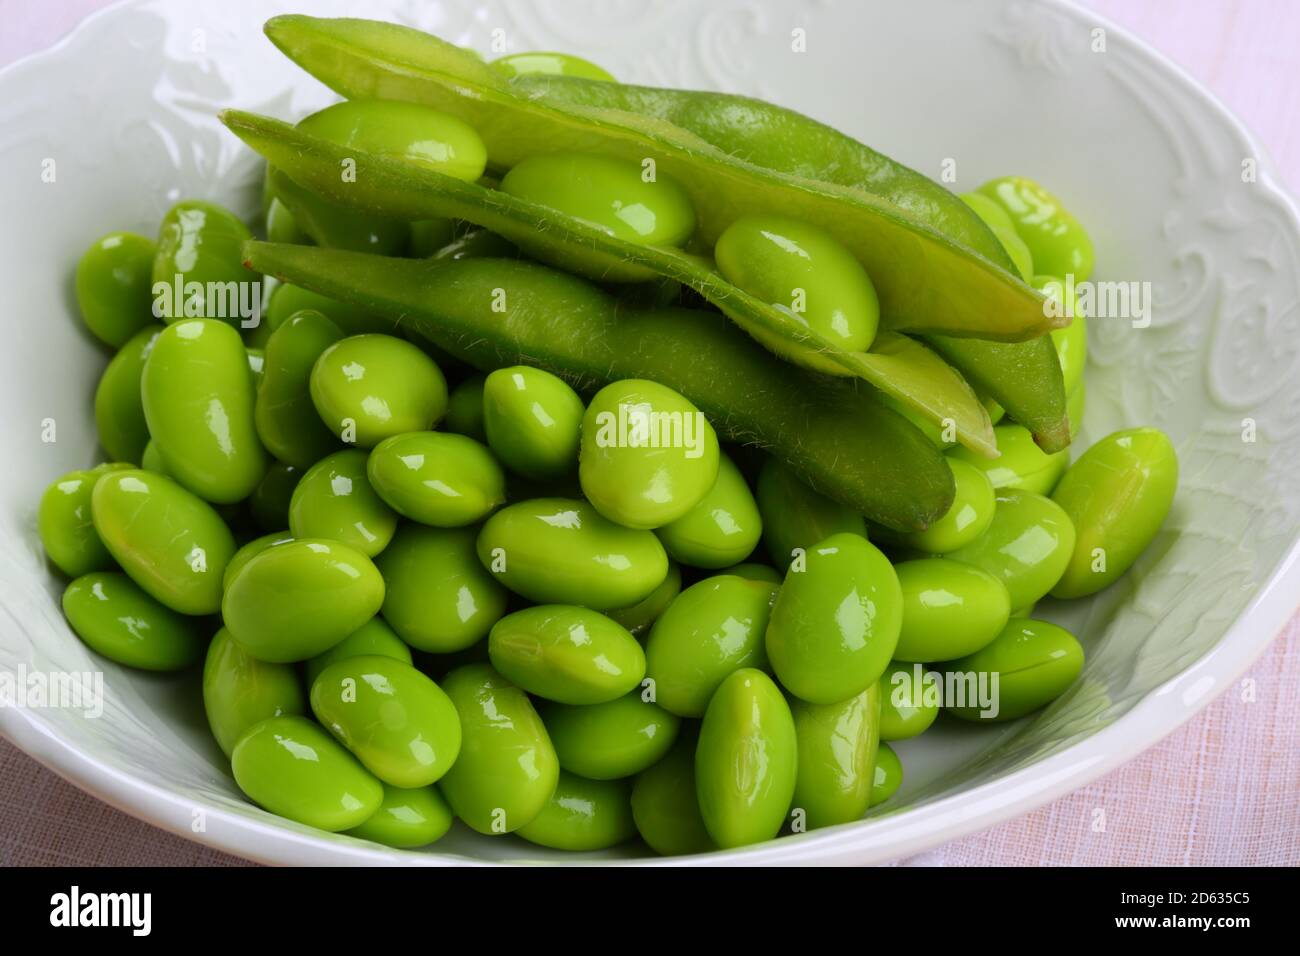 Fresh Green Peas in a White Bowl Stock Photo